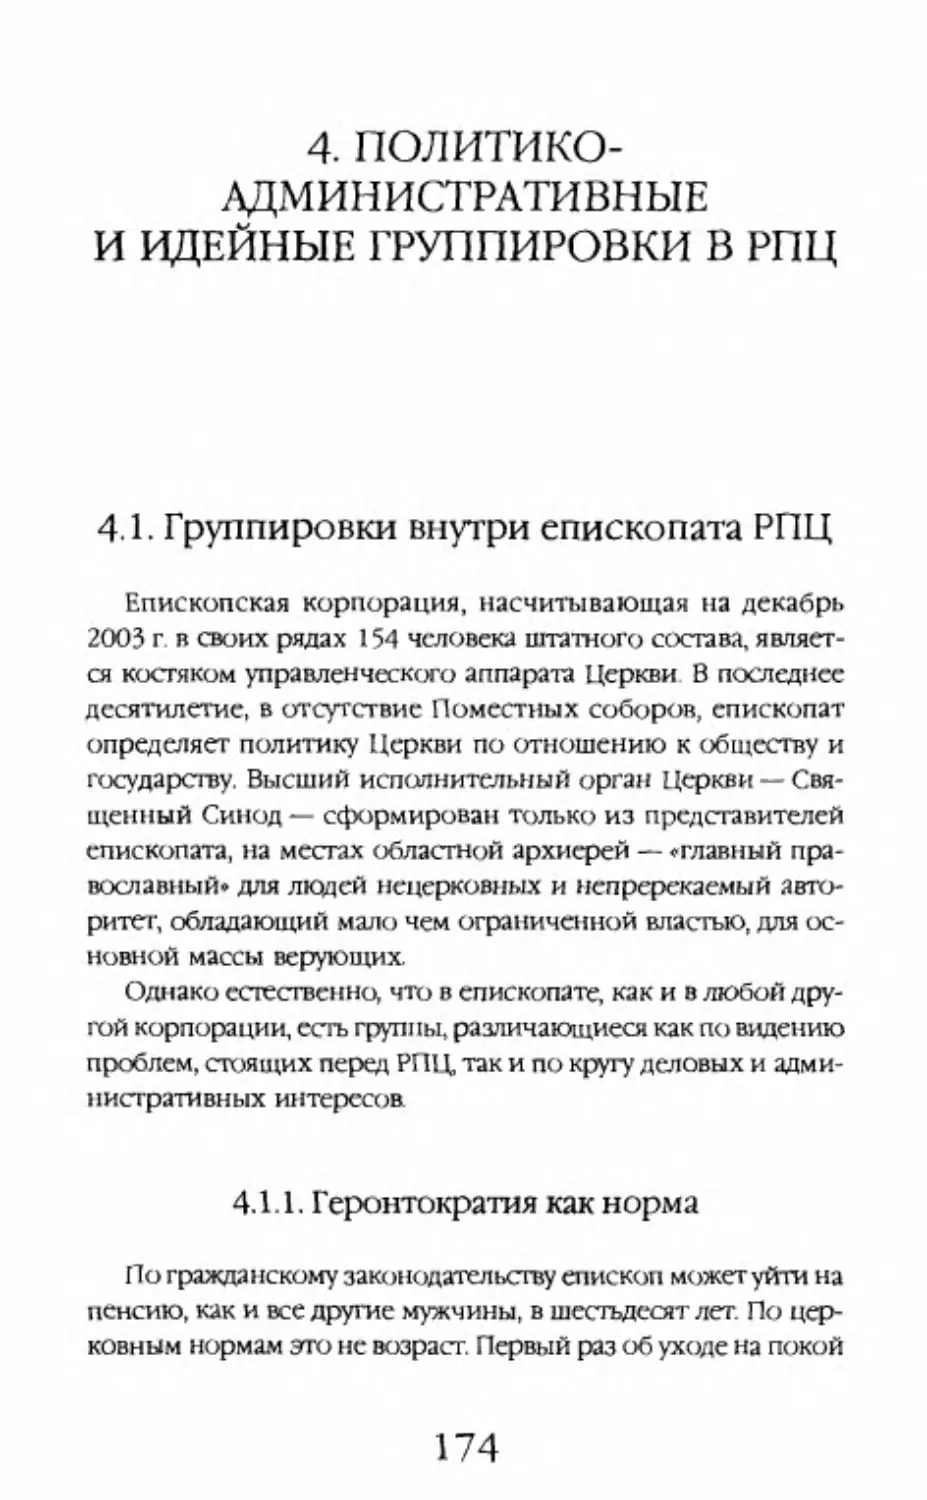 4. Политико-административные и идейные группировки в РПЦ